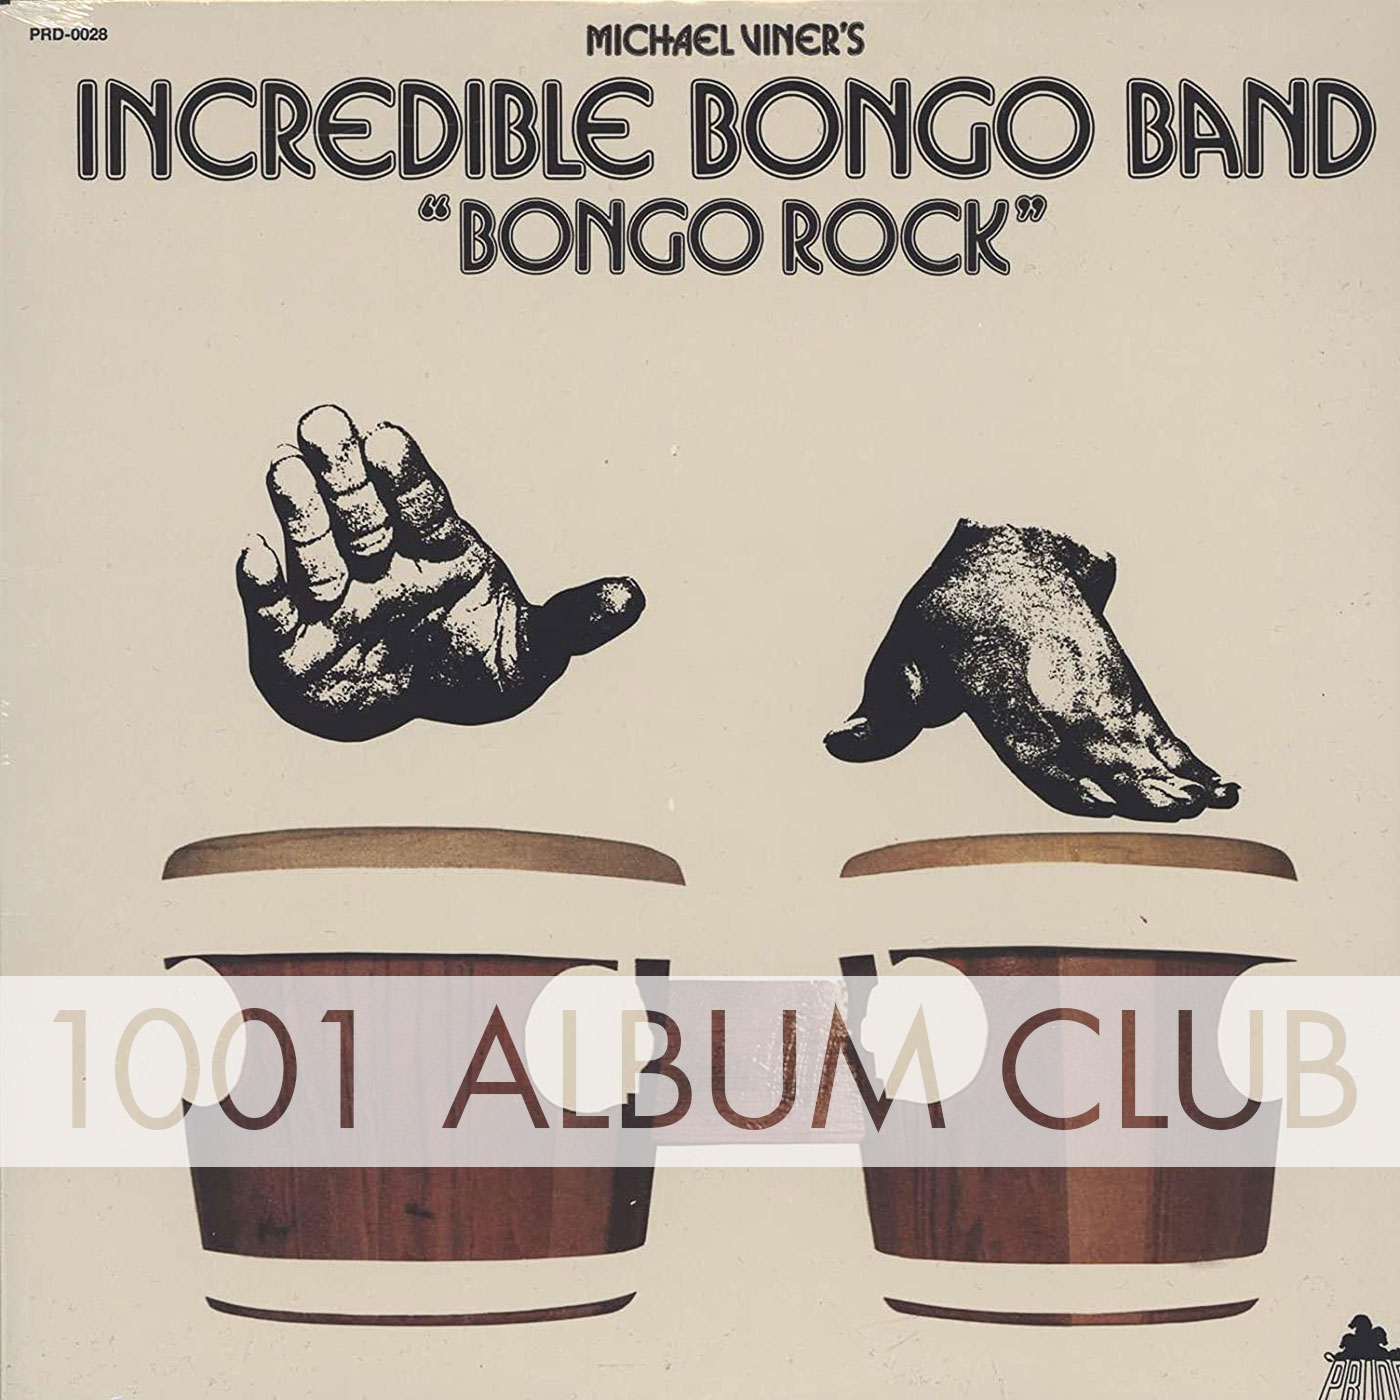 272 The Incredible Bongo Band – Bongo Rock – 1001 Album Club